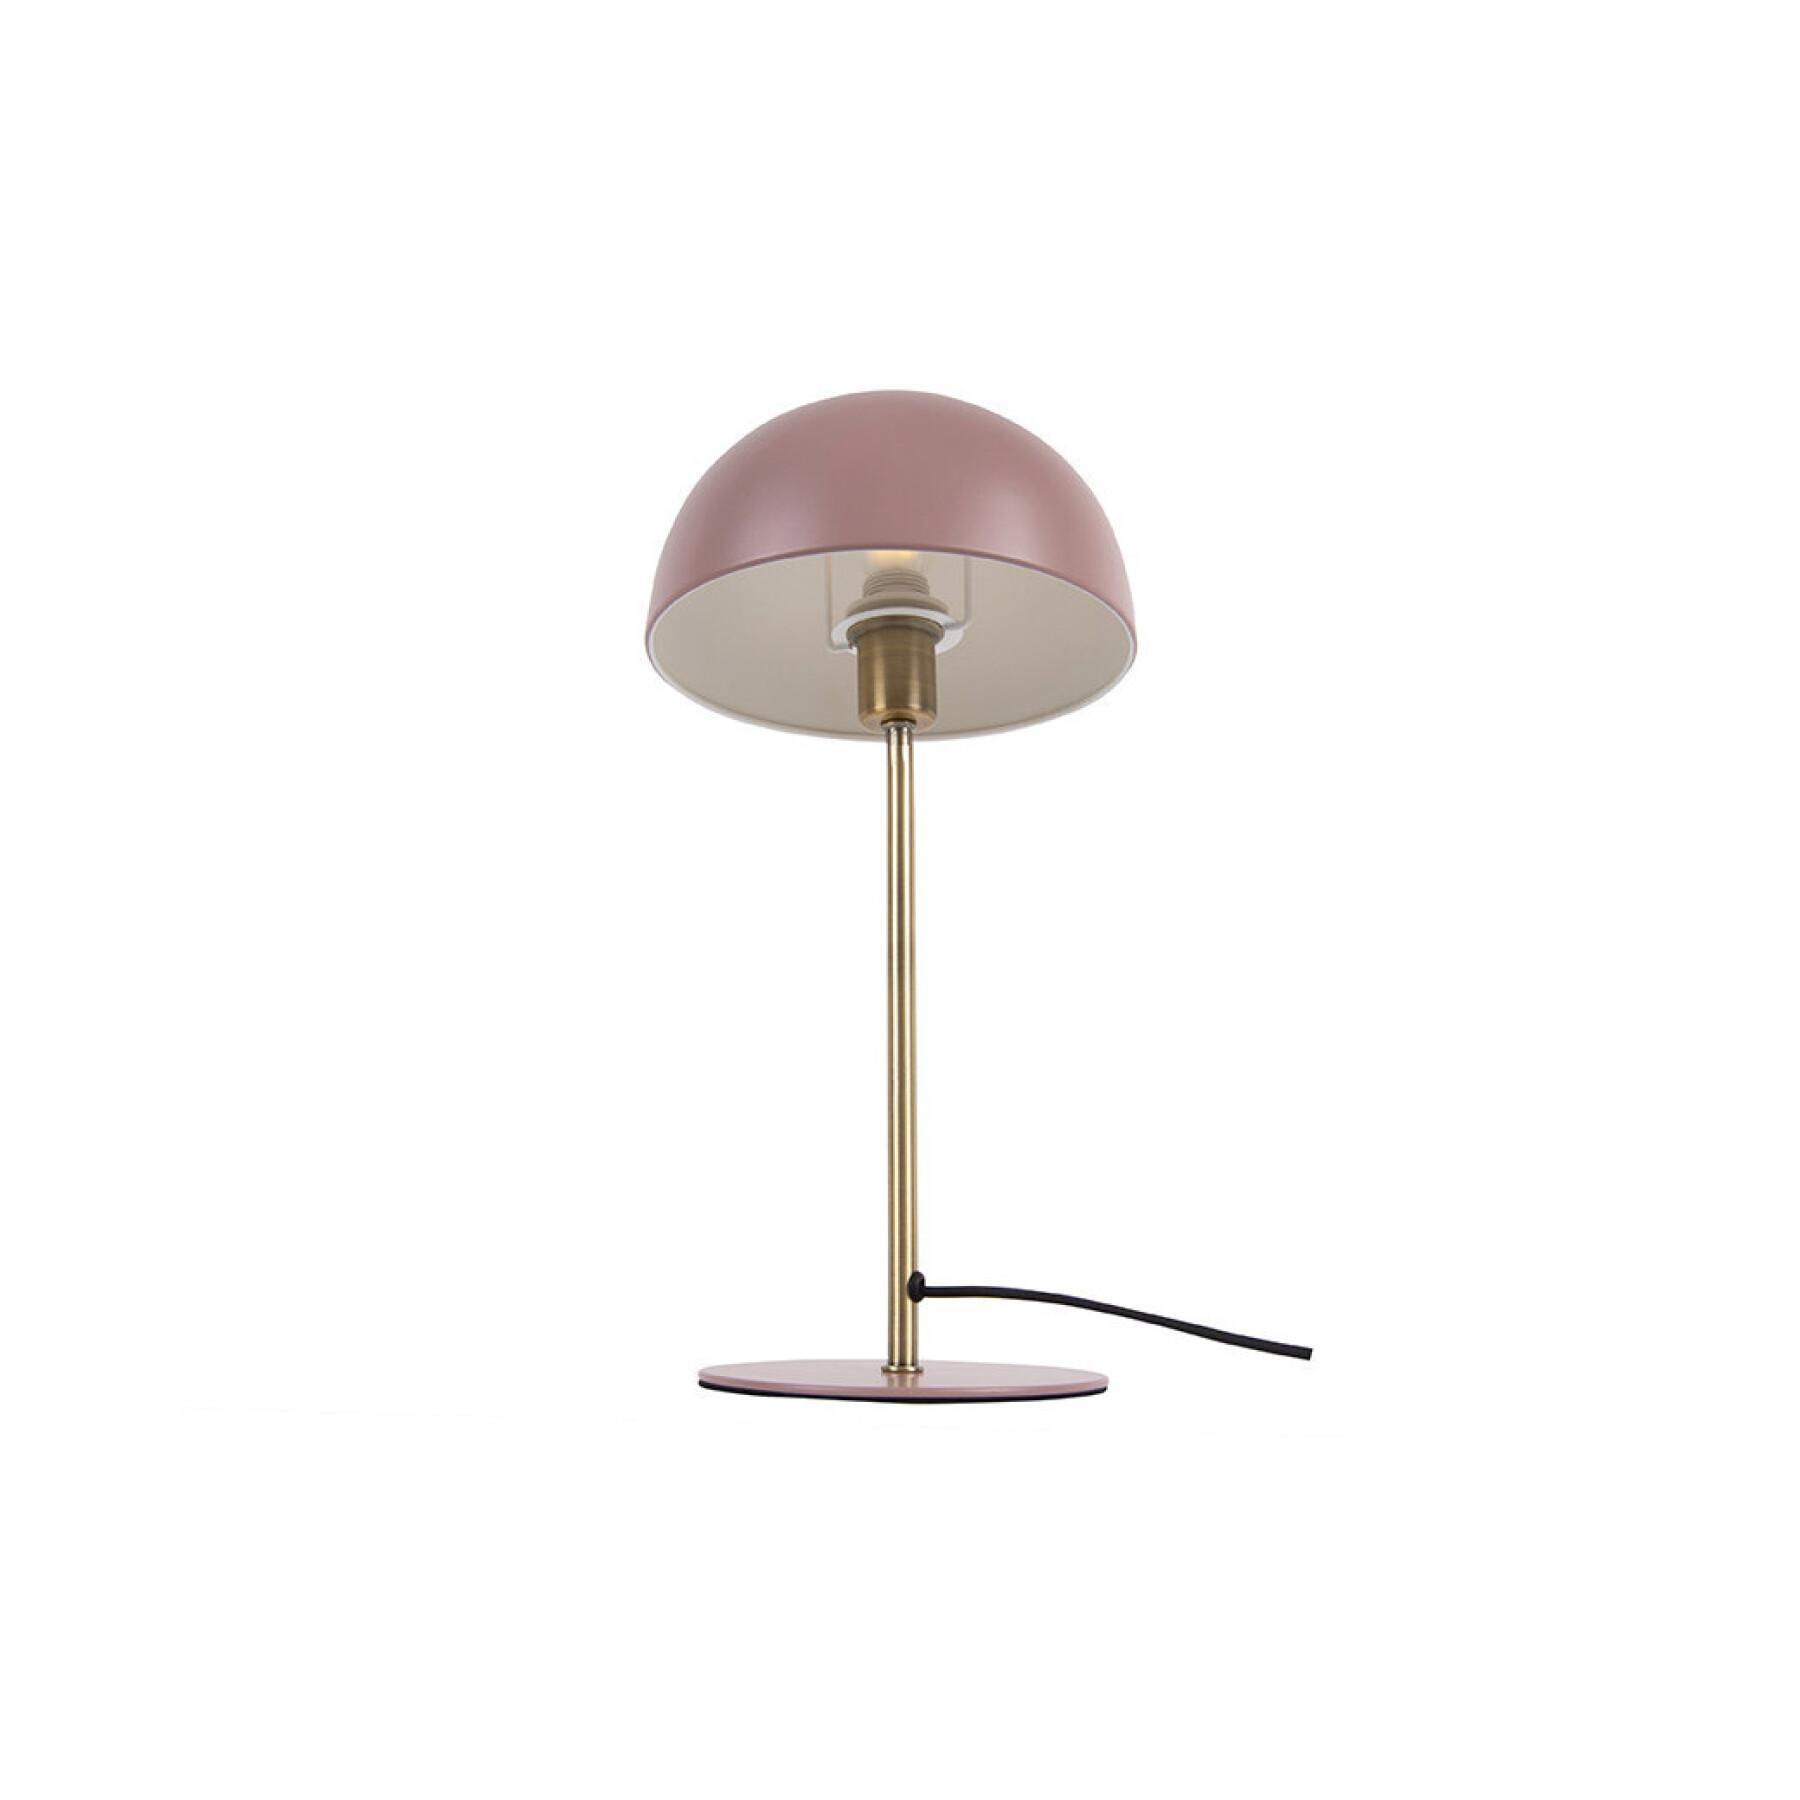 Metal table lamp Leitmotiv Bonnet